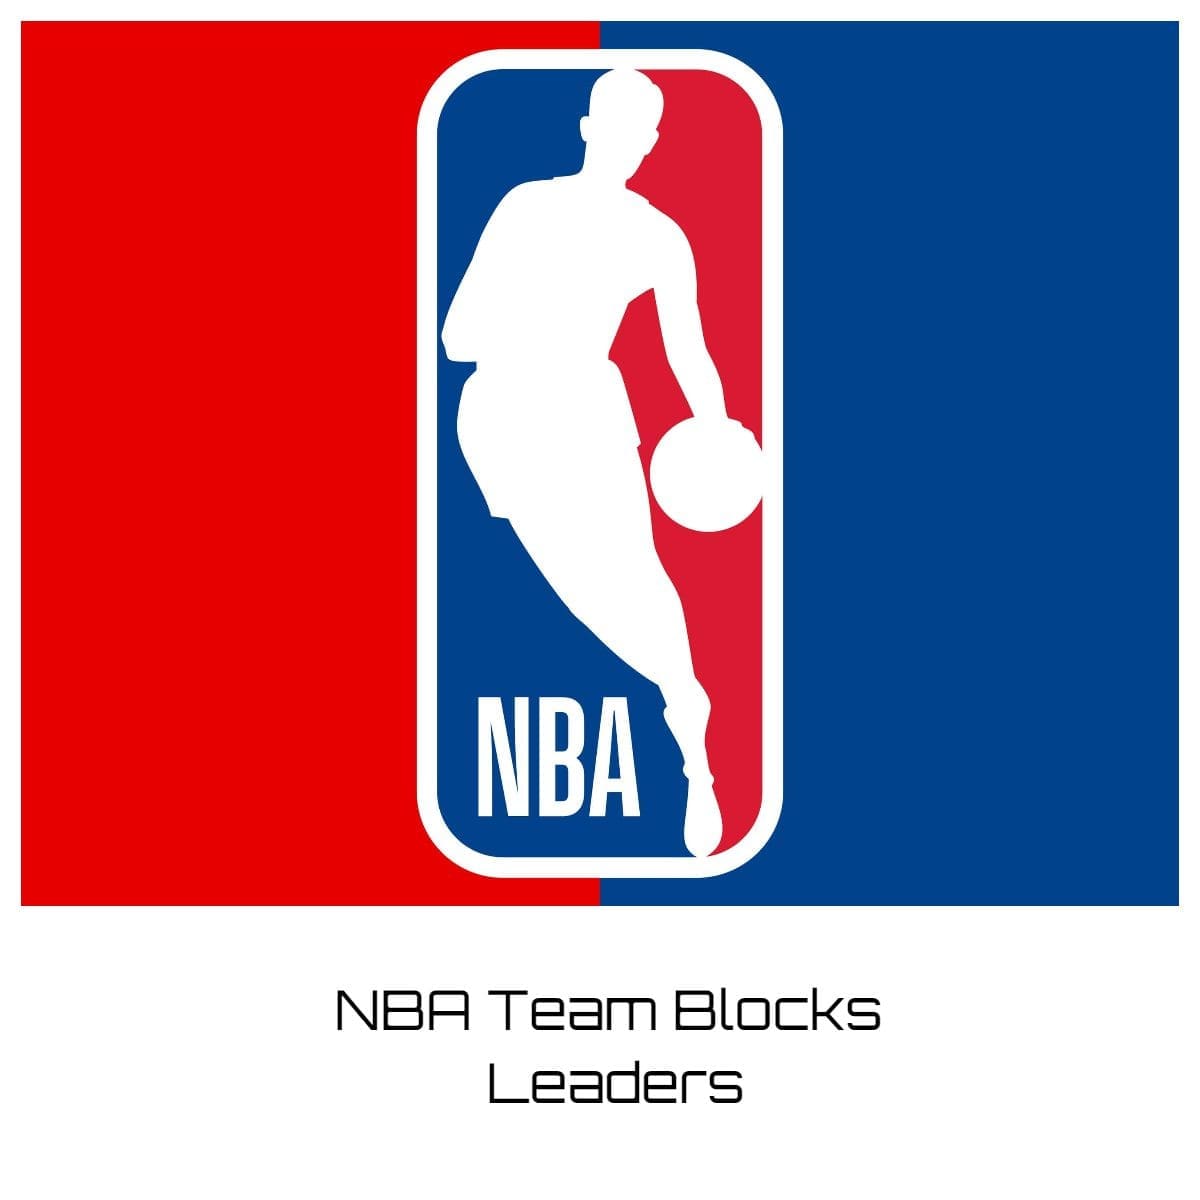 NBA Team Blocks Leaders 202324? Team Rankings